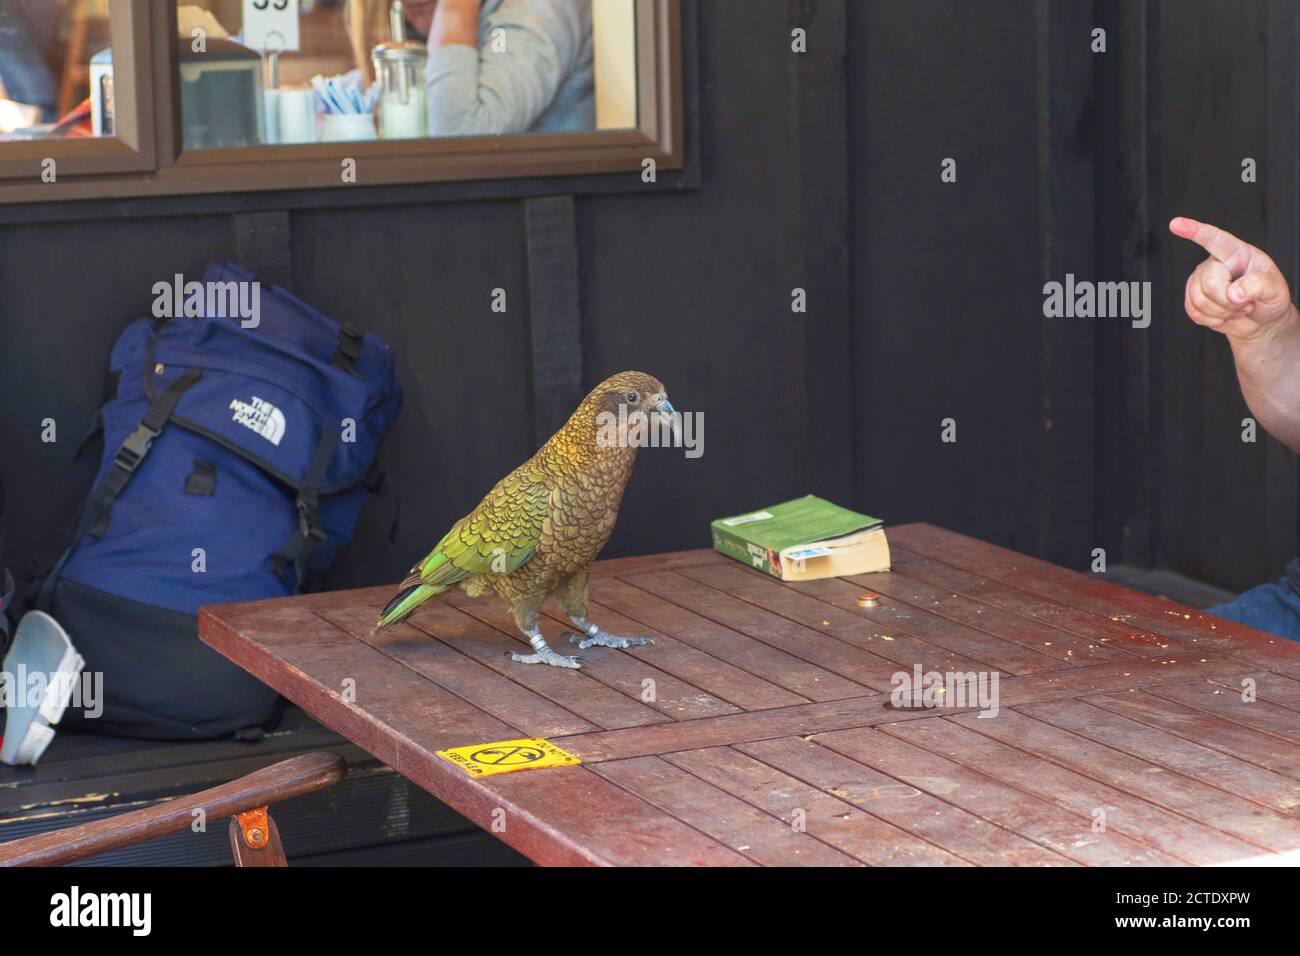 kea (Nestor notabilis), in piedi su un tavolo in un ristorante, tryint per rubare cibo, Nuova Zelanda, Isola del Sud Foto Stock